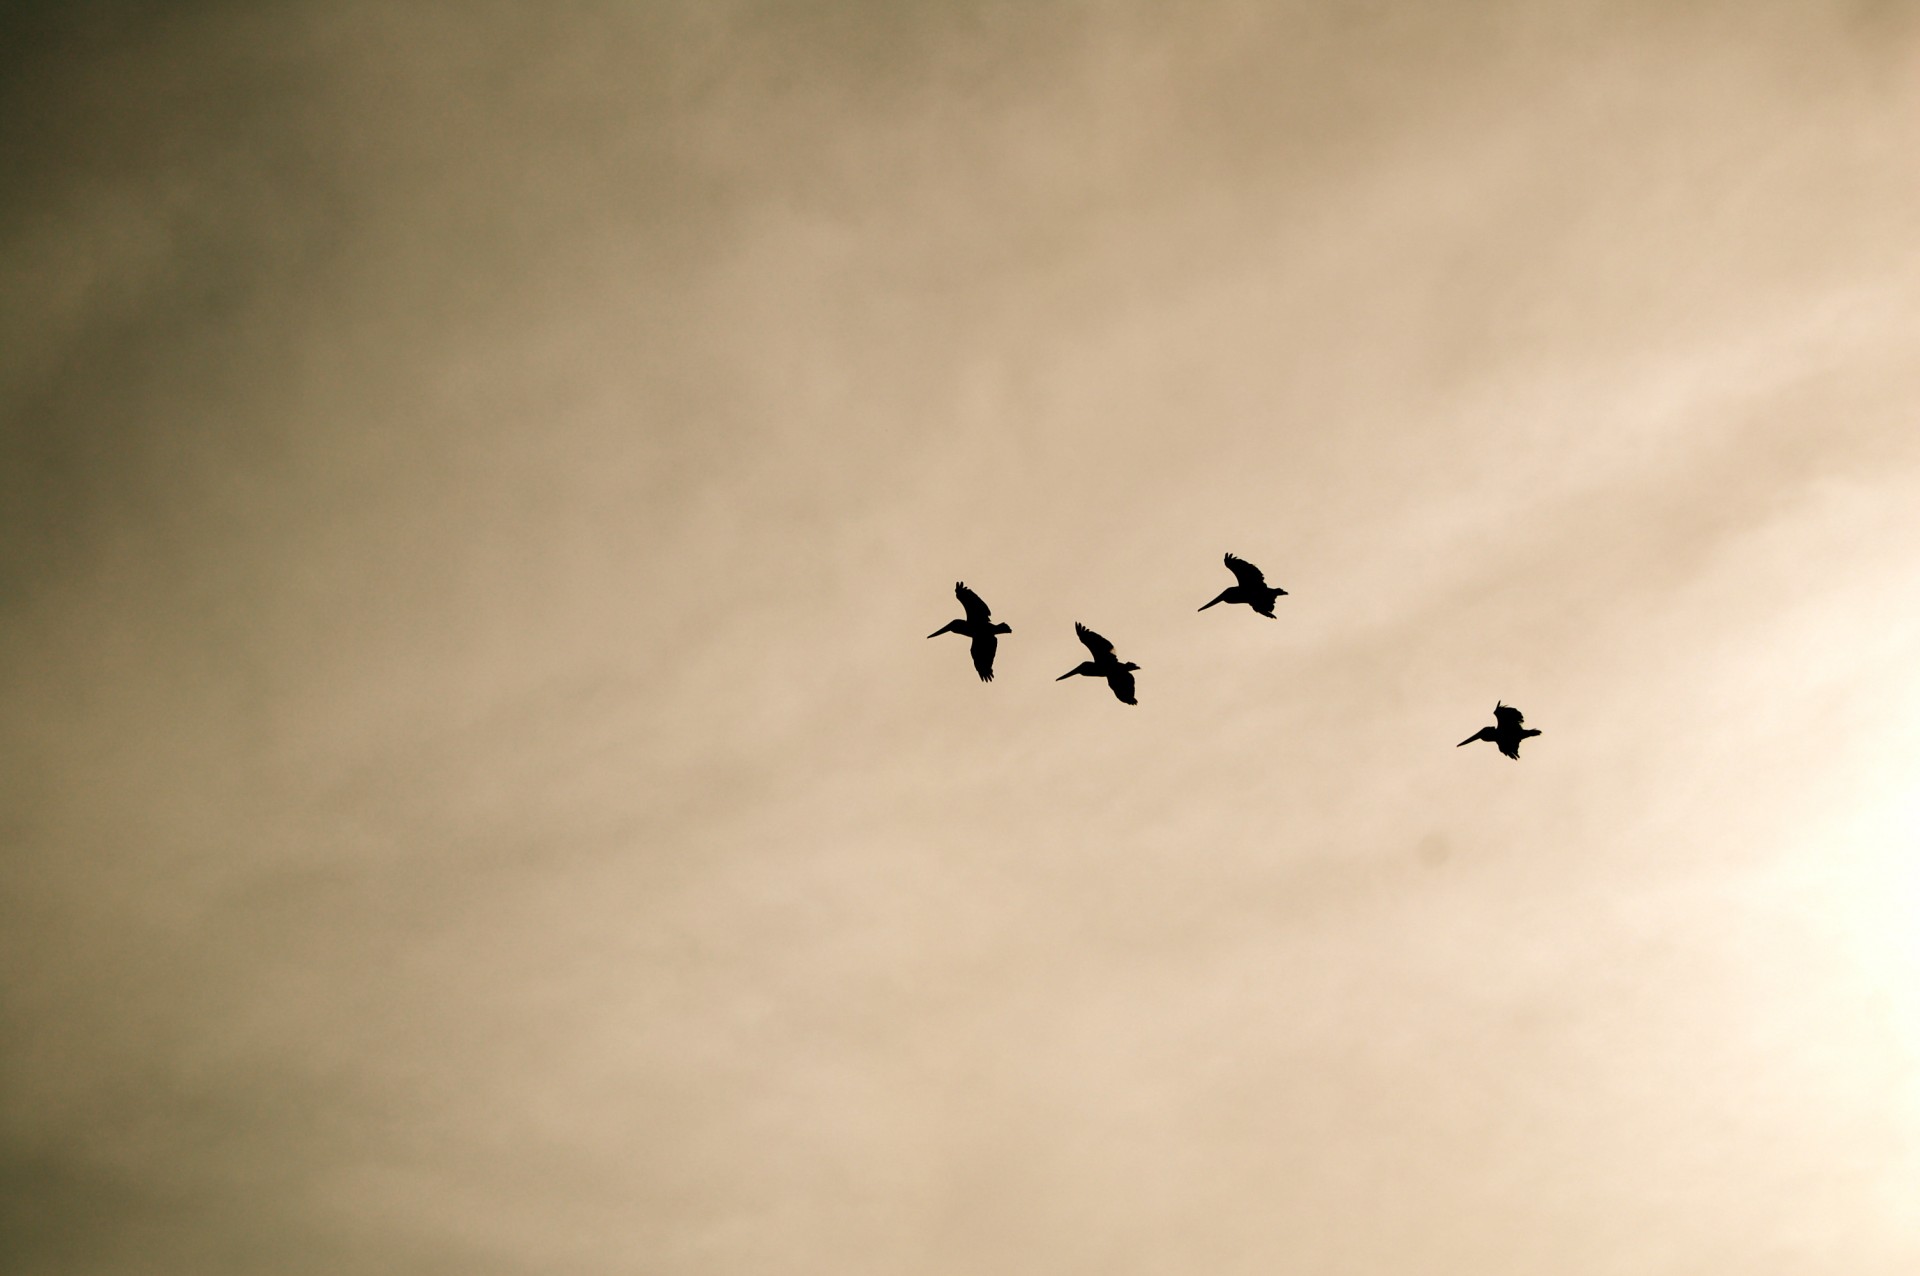 Глянь на небо птички летят колокольчики. Птицы в небе. Облака с птицами Графика. Чайка в небе сепия. Рисунок стая птиц в полете.